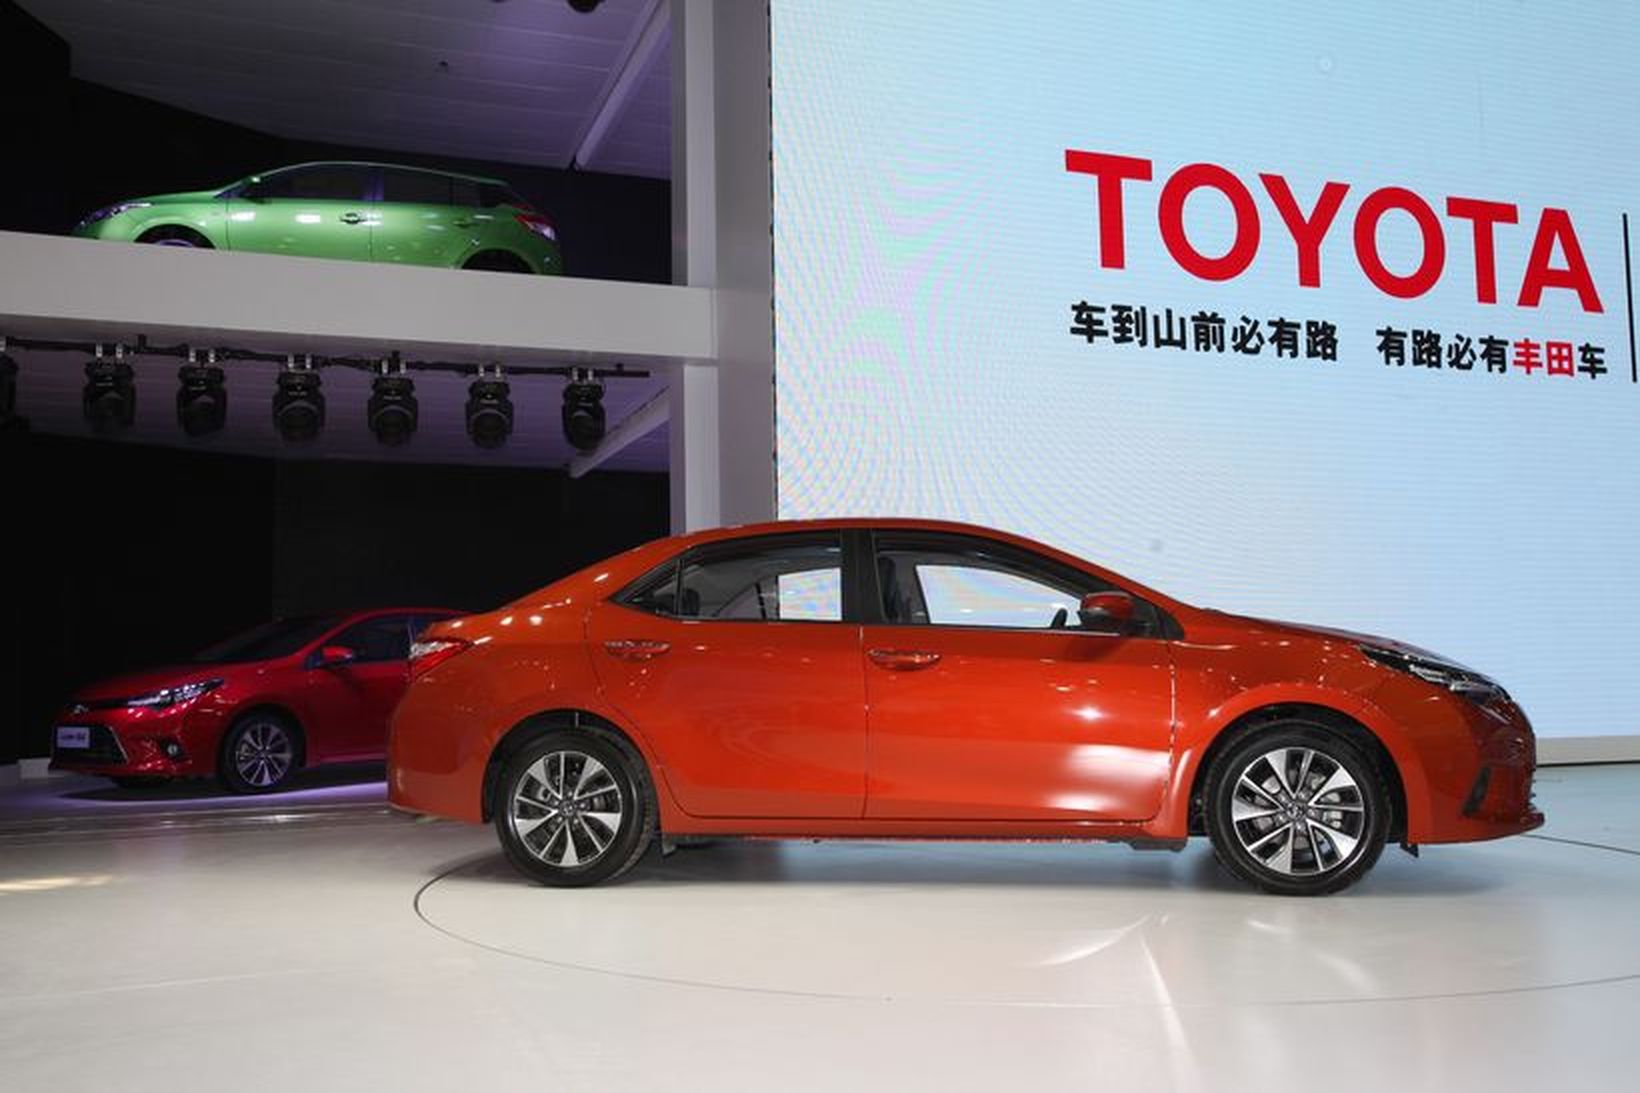 Toyota Levin á bílasýningunni sem nú stendur yfir í Peking.